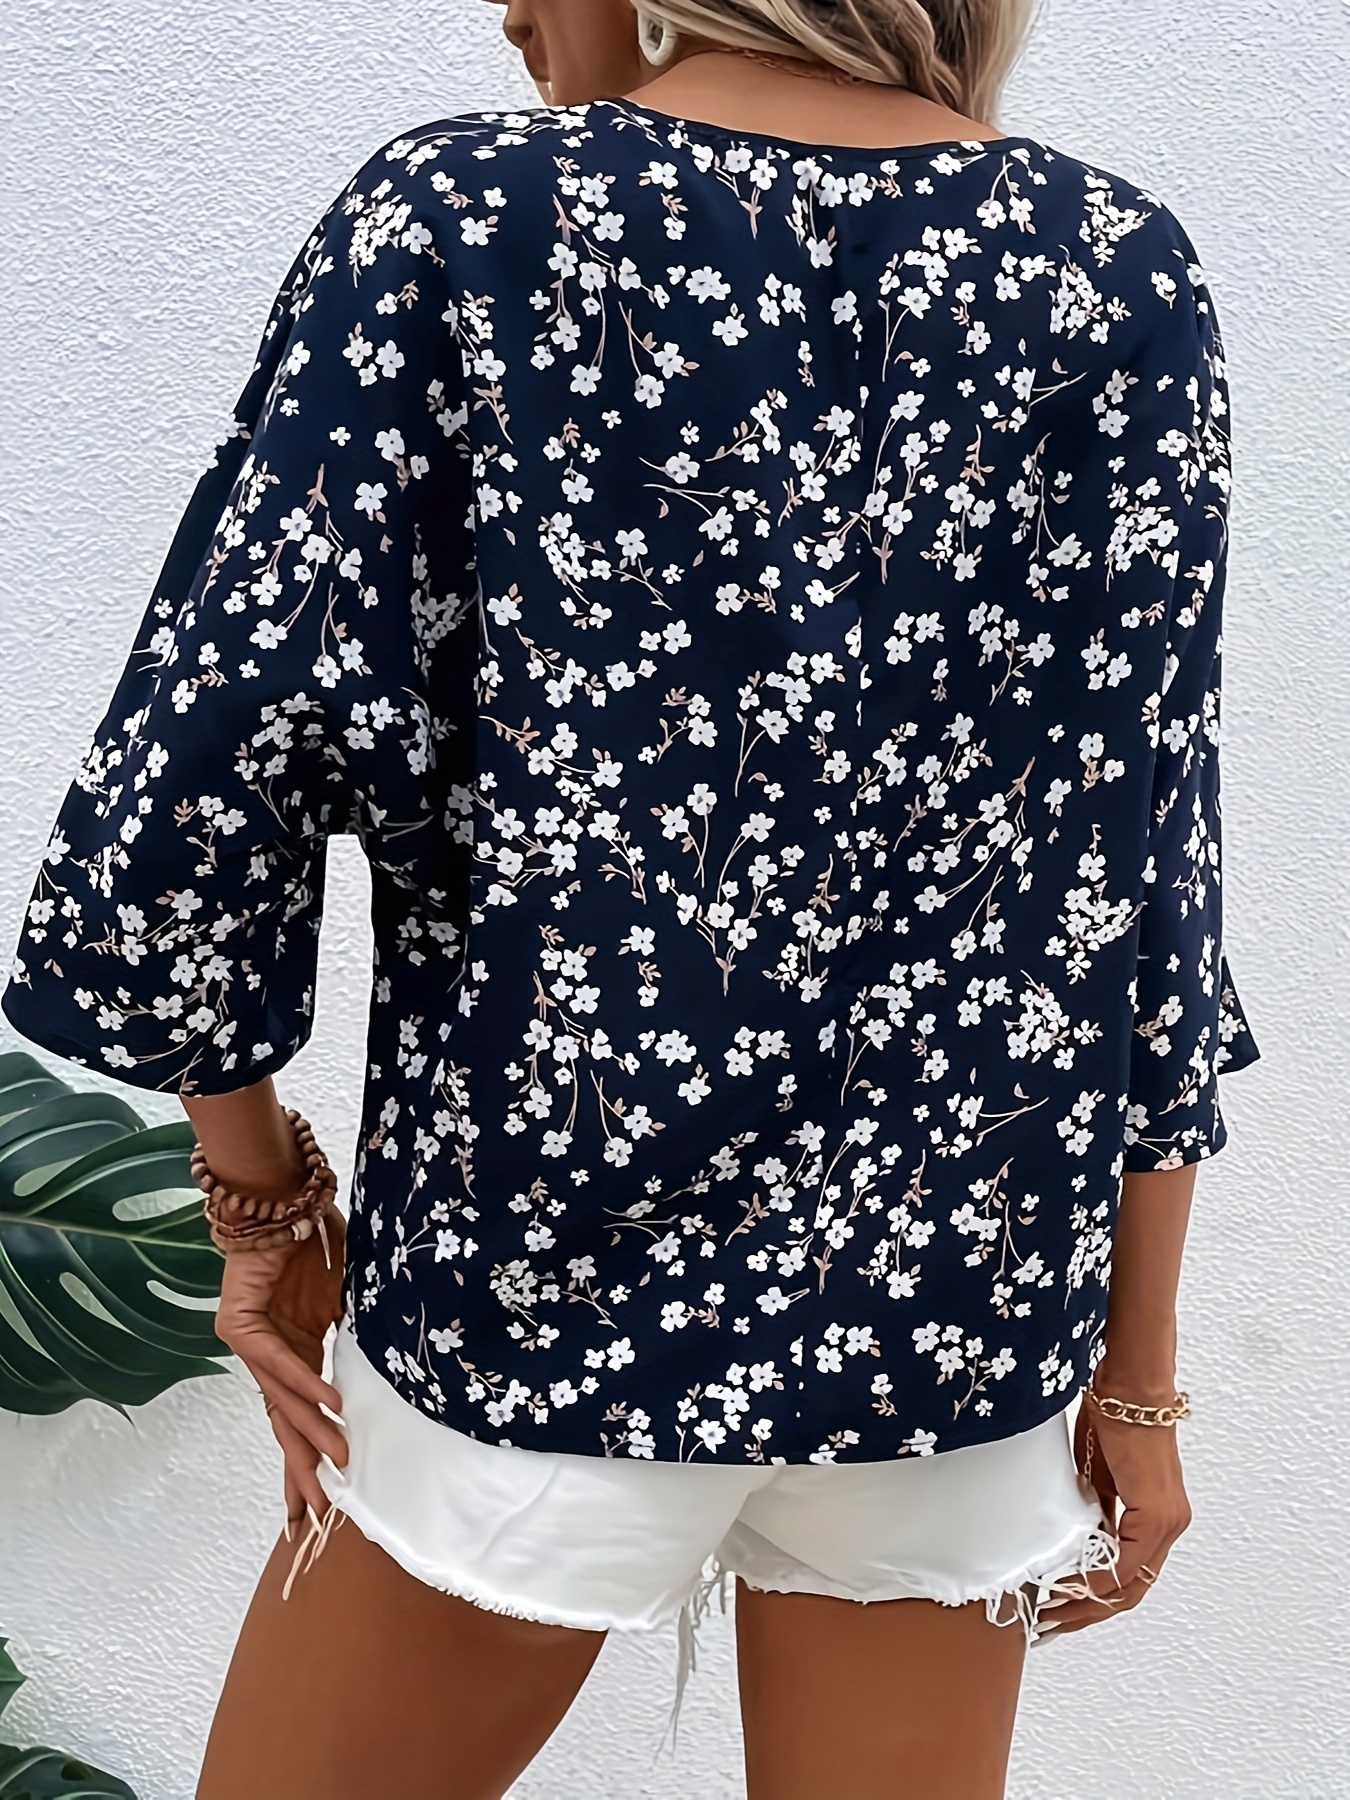 Floral Print V Yaka Bluz, Bahar ve Sonbahar için Rahat 3/4 Kollu Bluz, Kadın Giyim